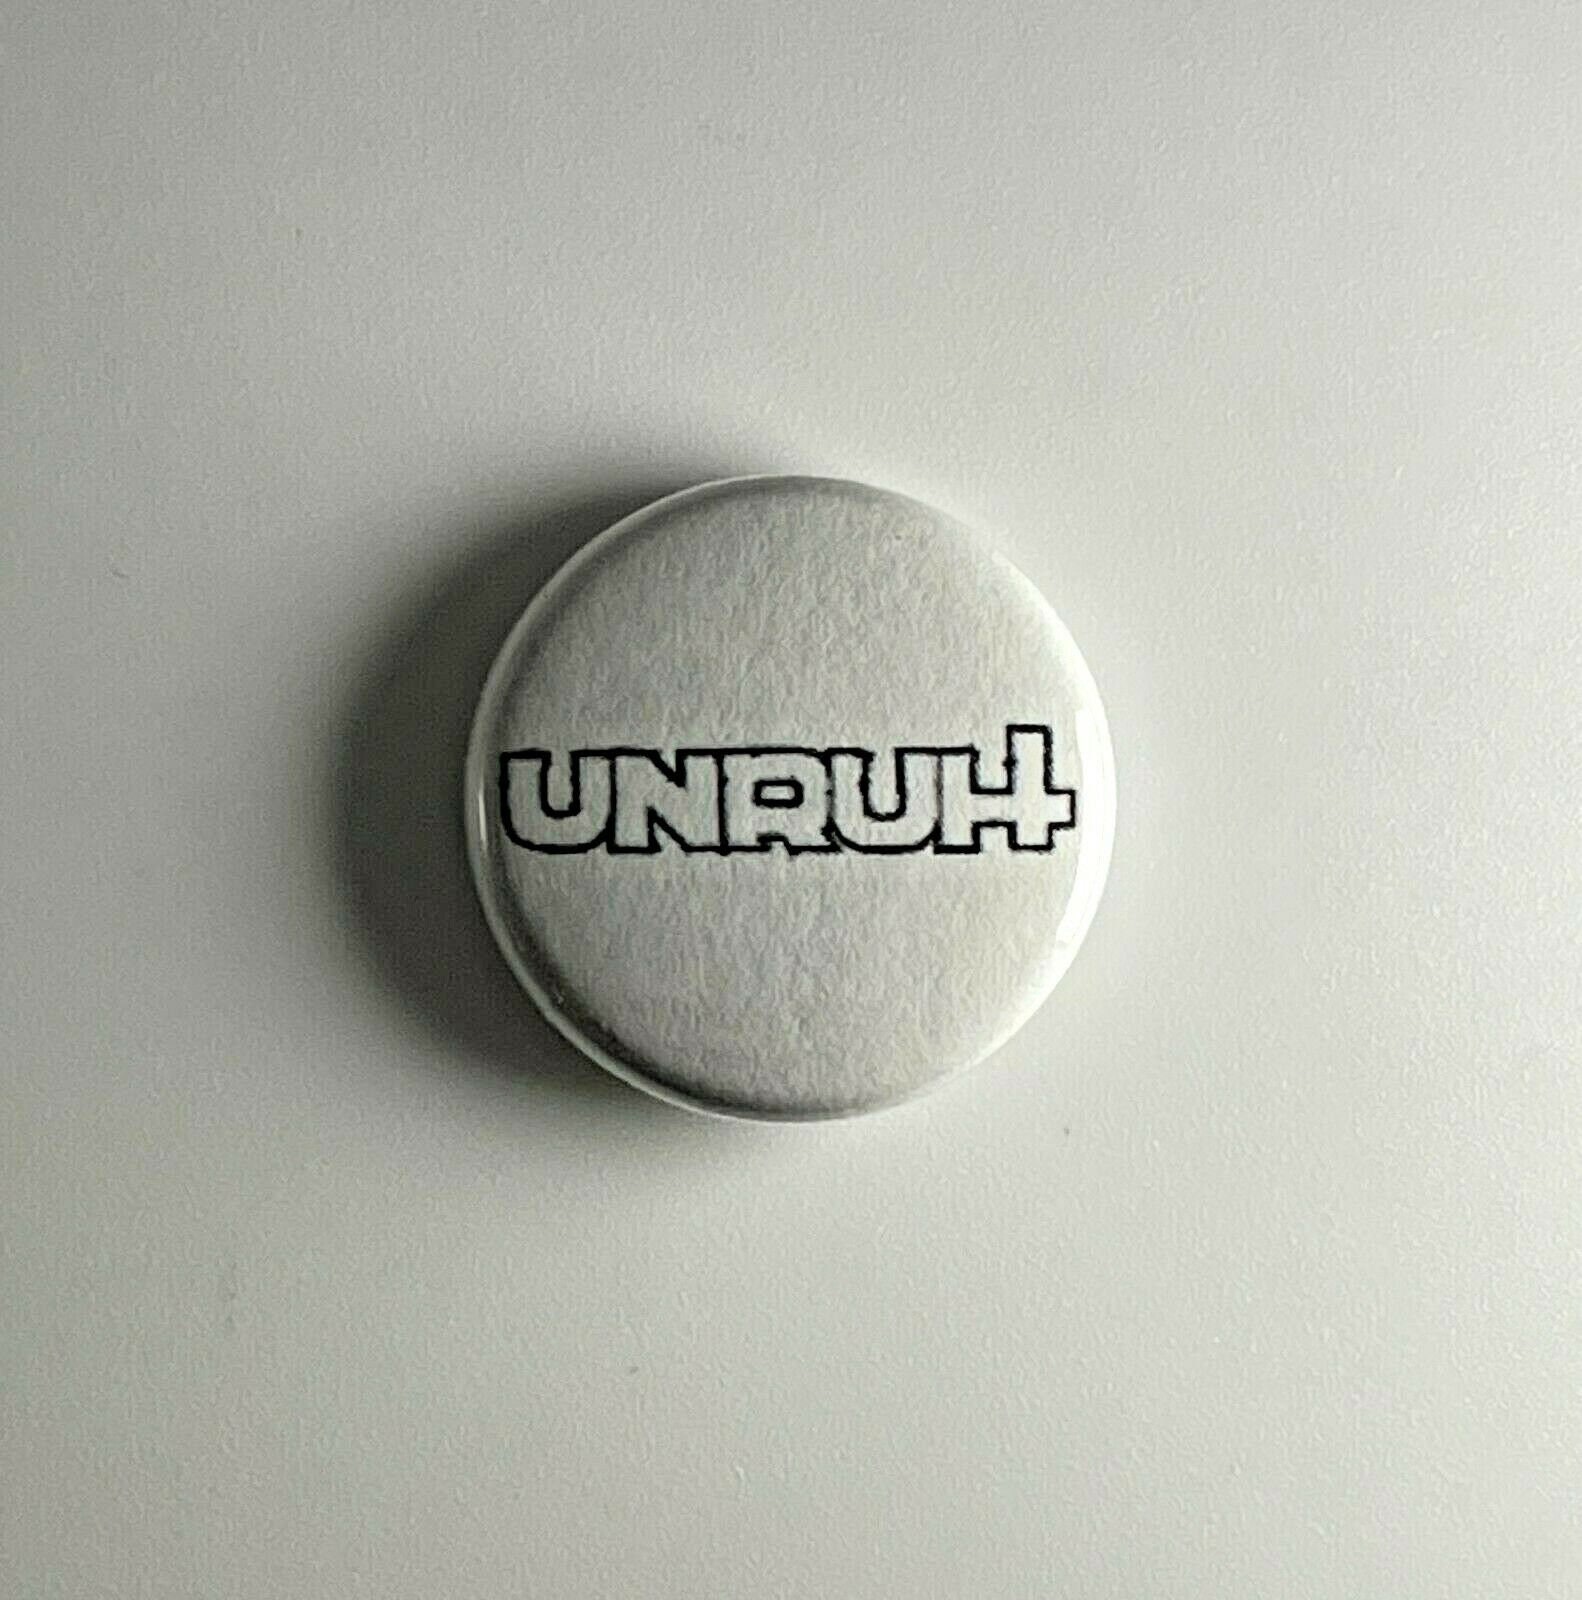 Unruh 1" Button U003B Anstecker von Heavylowmerchandise